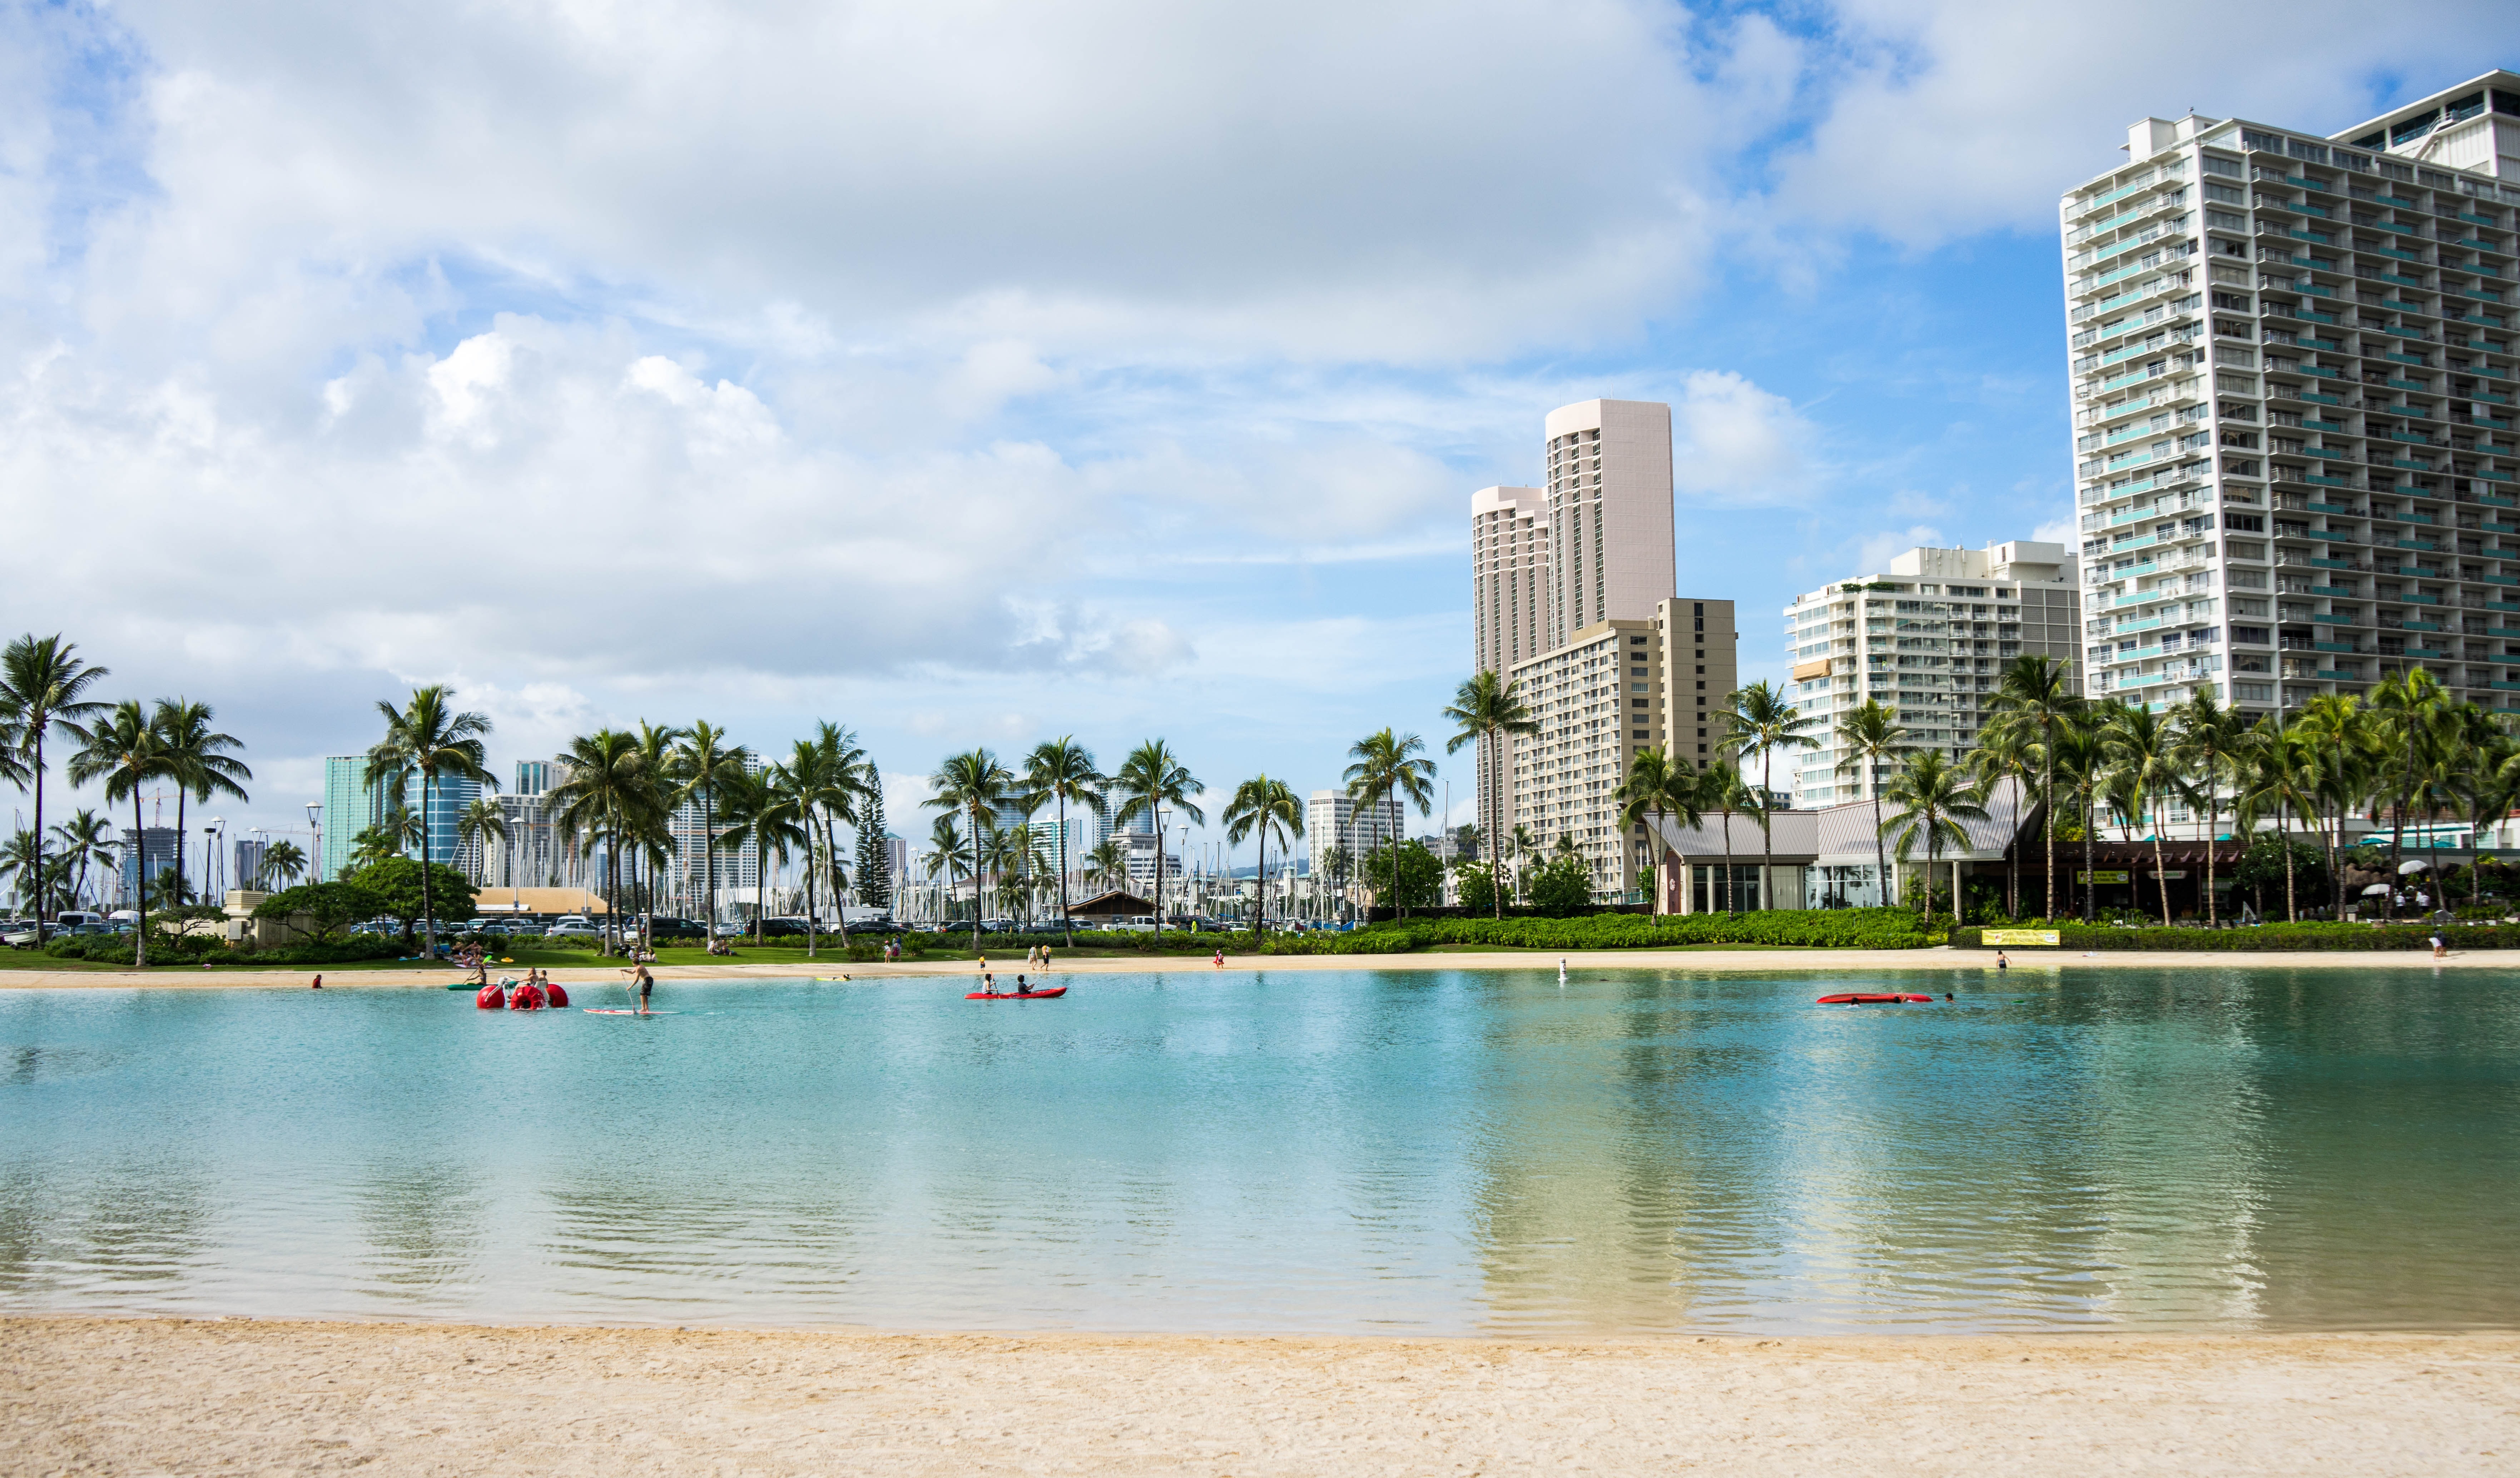 Oahu, Hawaii, Honolulu, Waikiki Beach, sky, tree